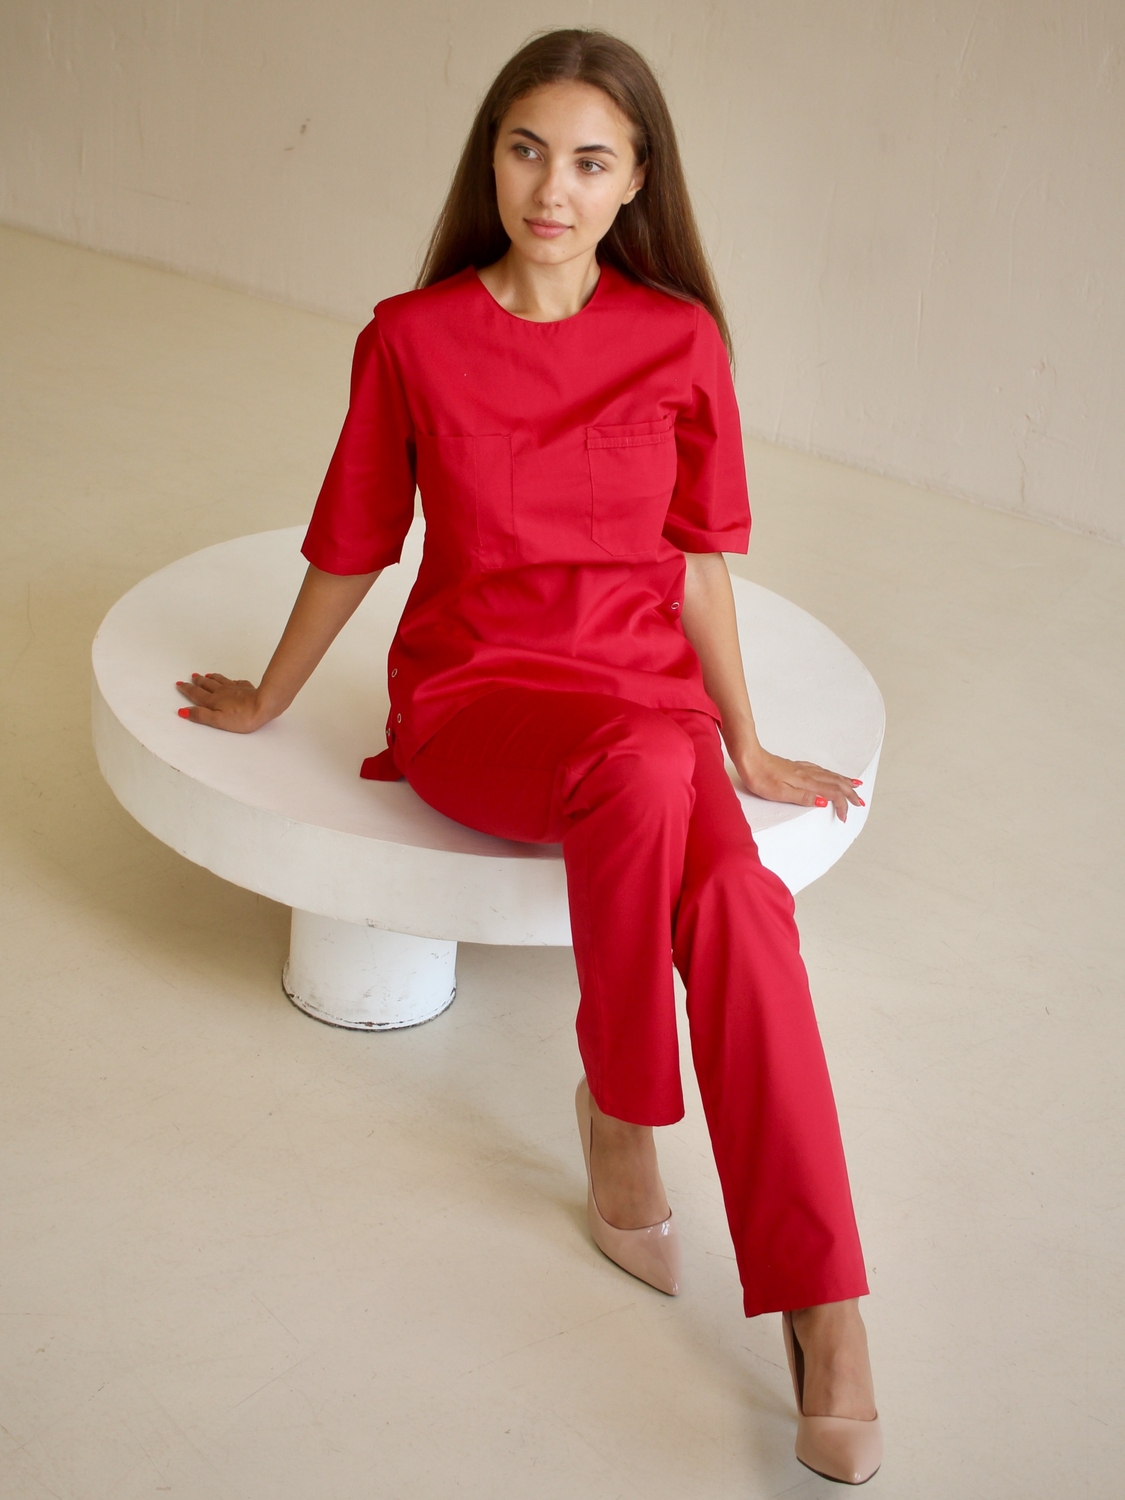 Жіночий медичний костюм хірургічний 20-08 червоний